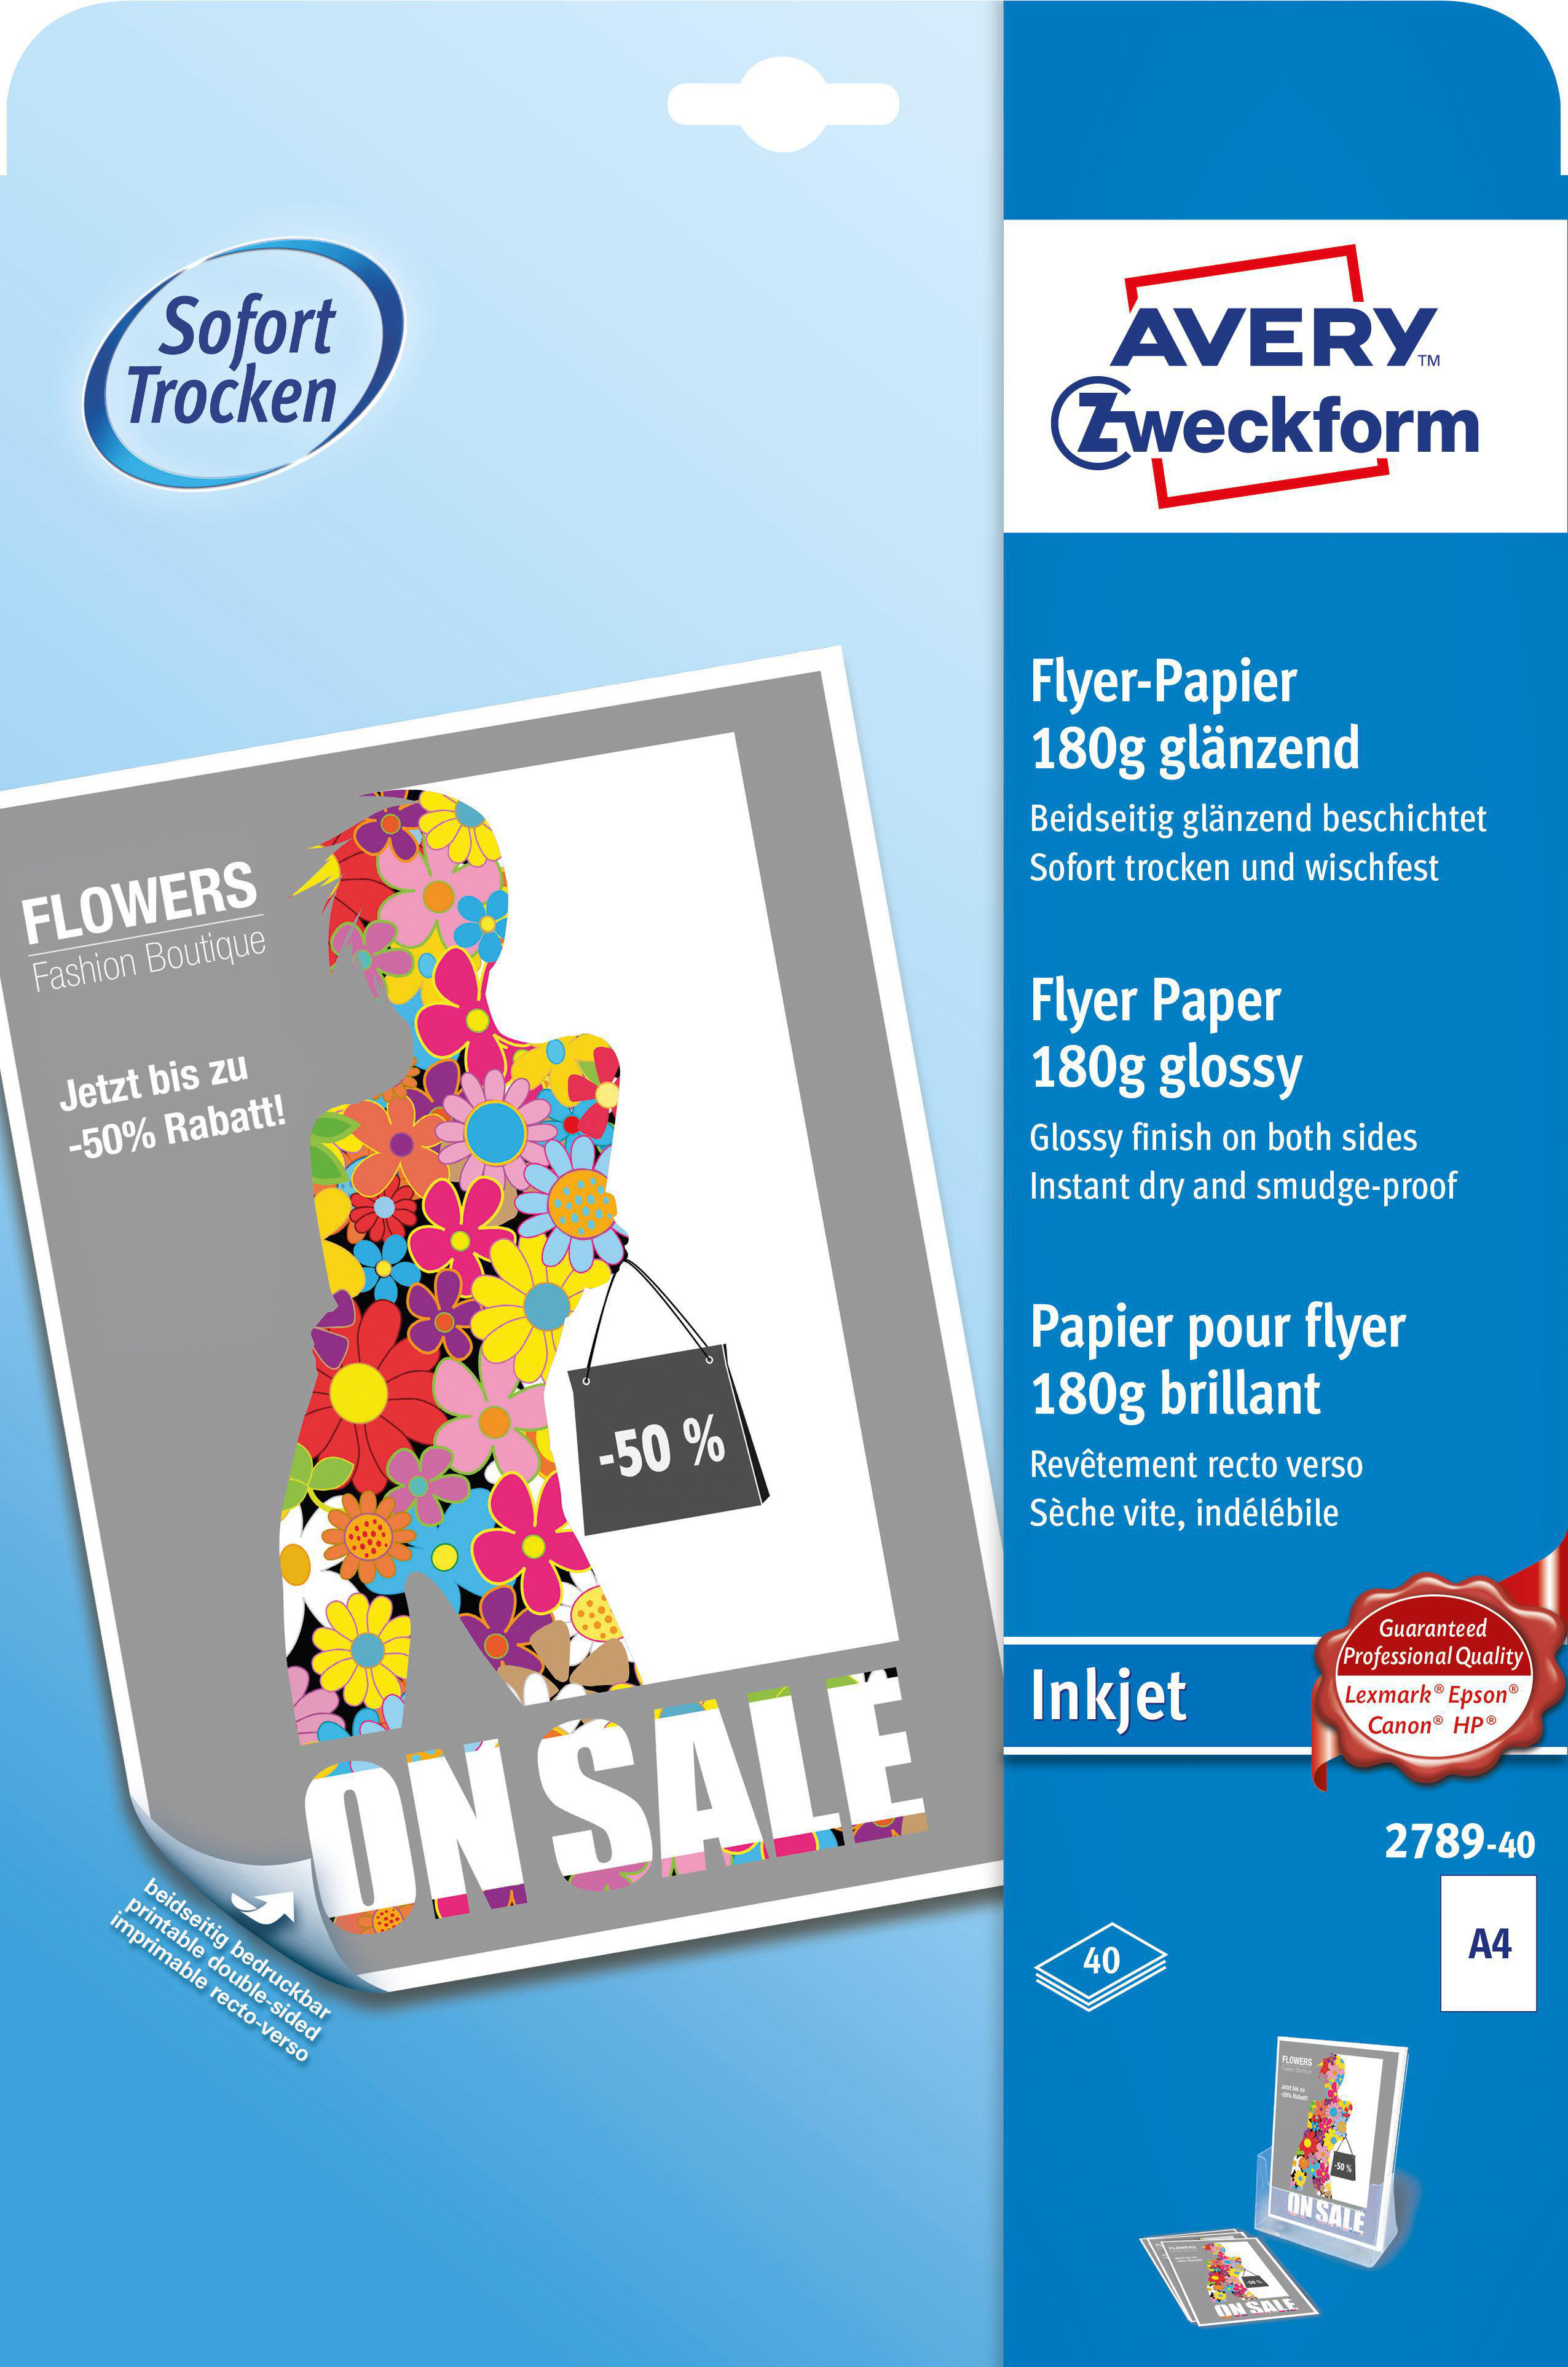 AVERY ZWECKFORM 2789-40 Inkjet Papier Flyer 40 Inhalt: Flyer, g/m², beschichtet, Blatt mm Blatt beidseitig 180 297 A4 210 40 x